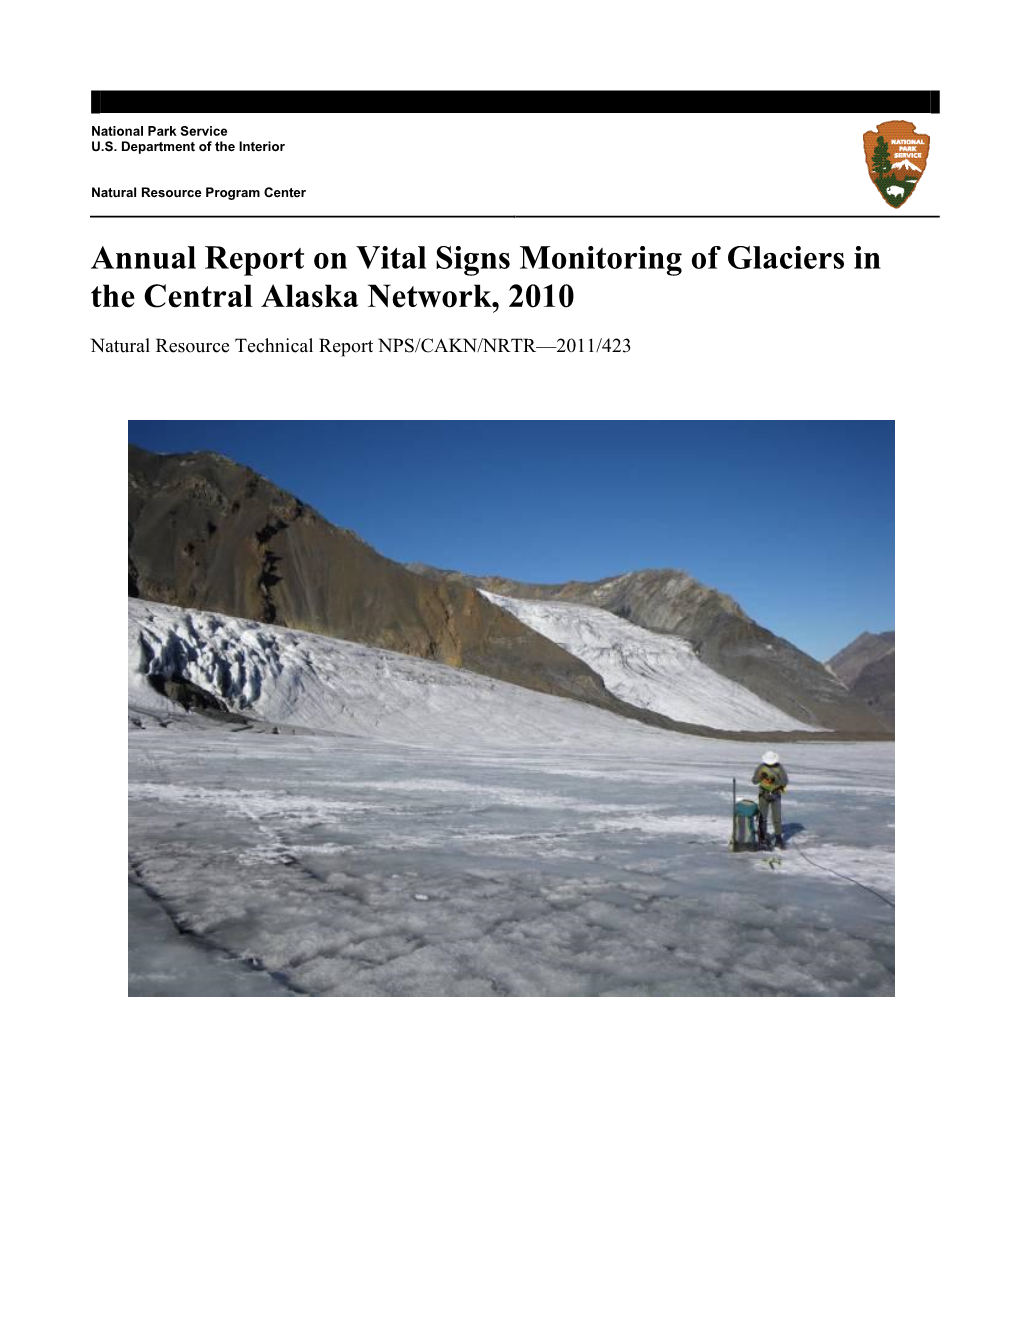 East Fork Toklat Glacier GPS Survey Data